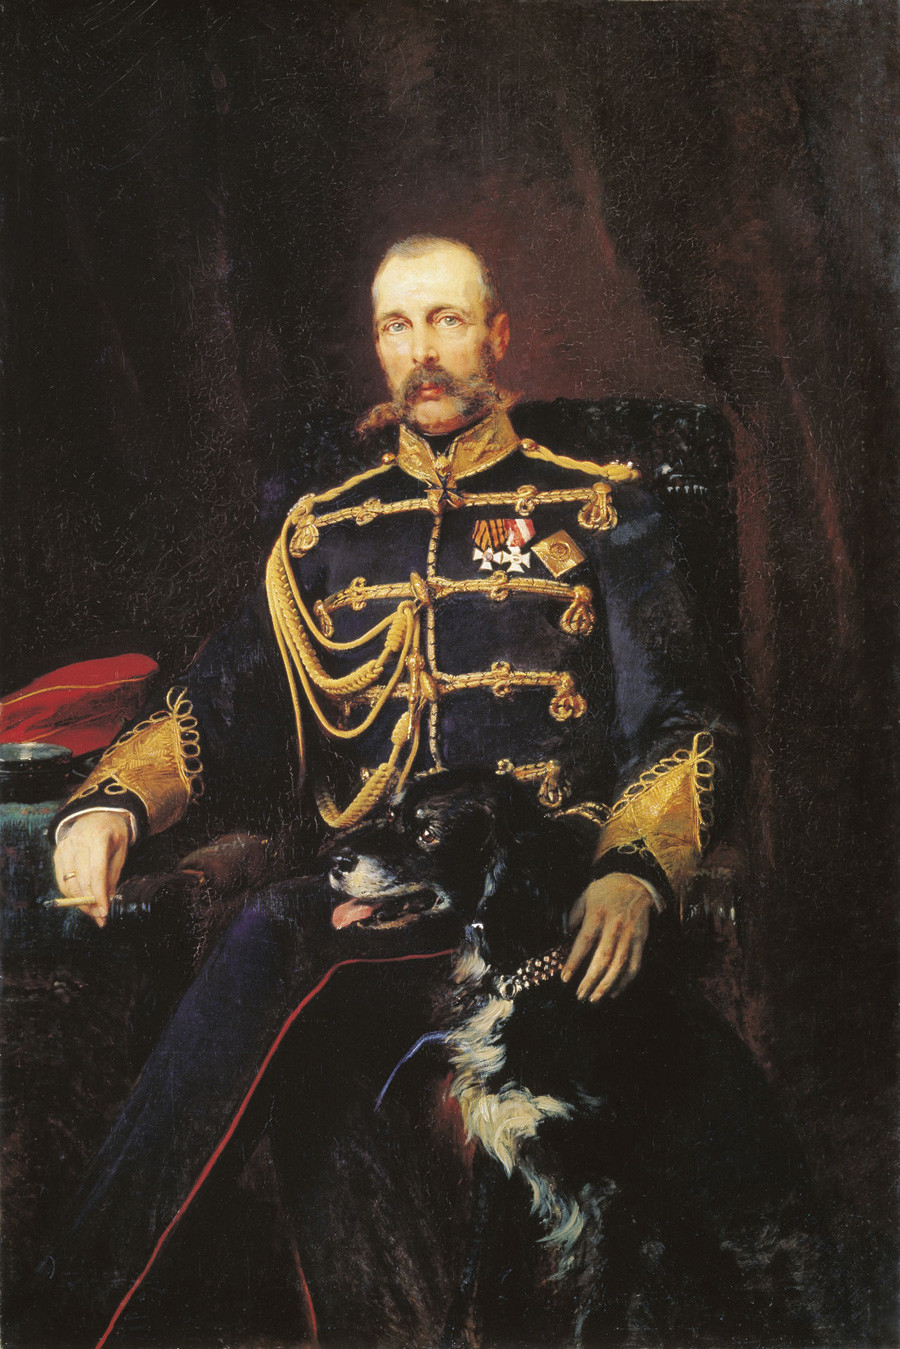  Alexander II of Russia by Konstantin Makovsky